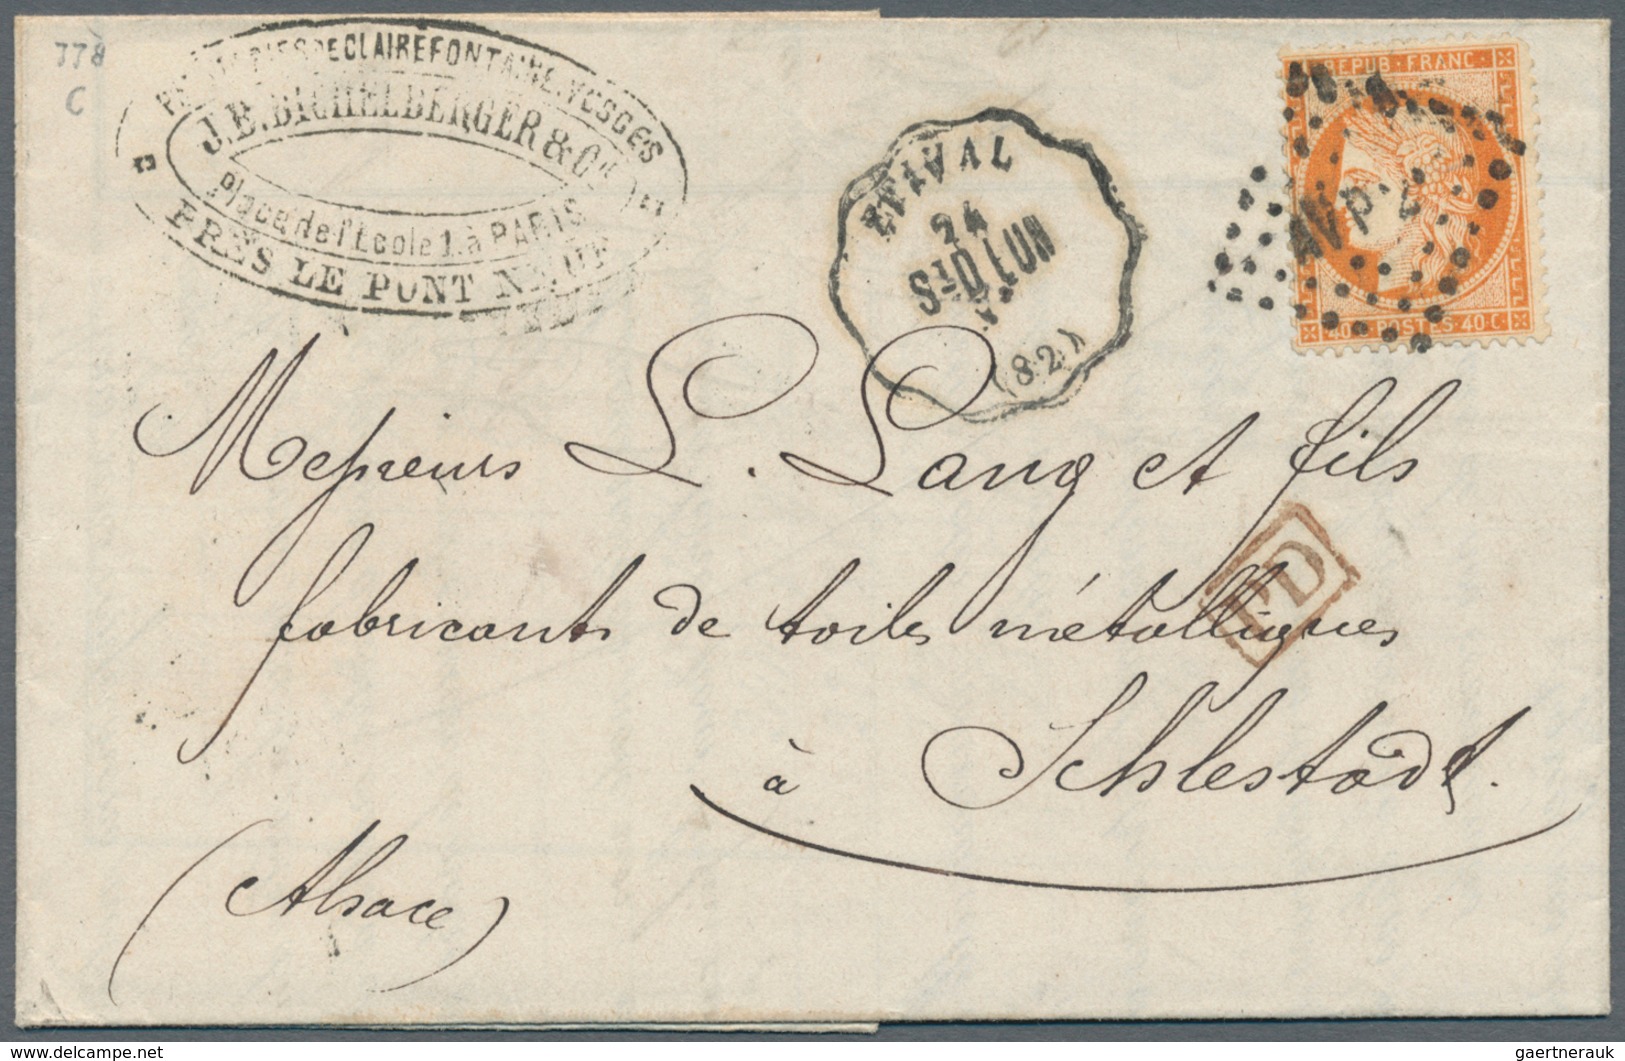 Frankreich: 1798/1876, schöner kleiner Bestand von Vorphilabriefen sowie Ceres und Napoleon-Frankatu